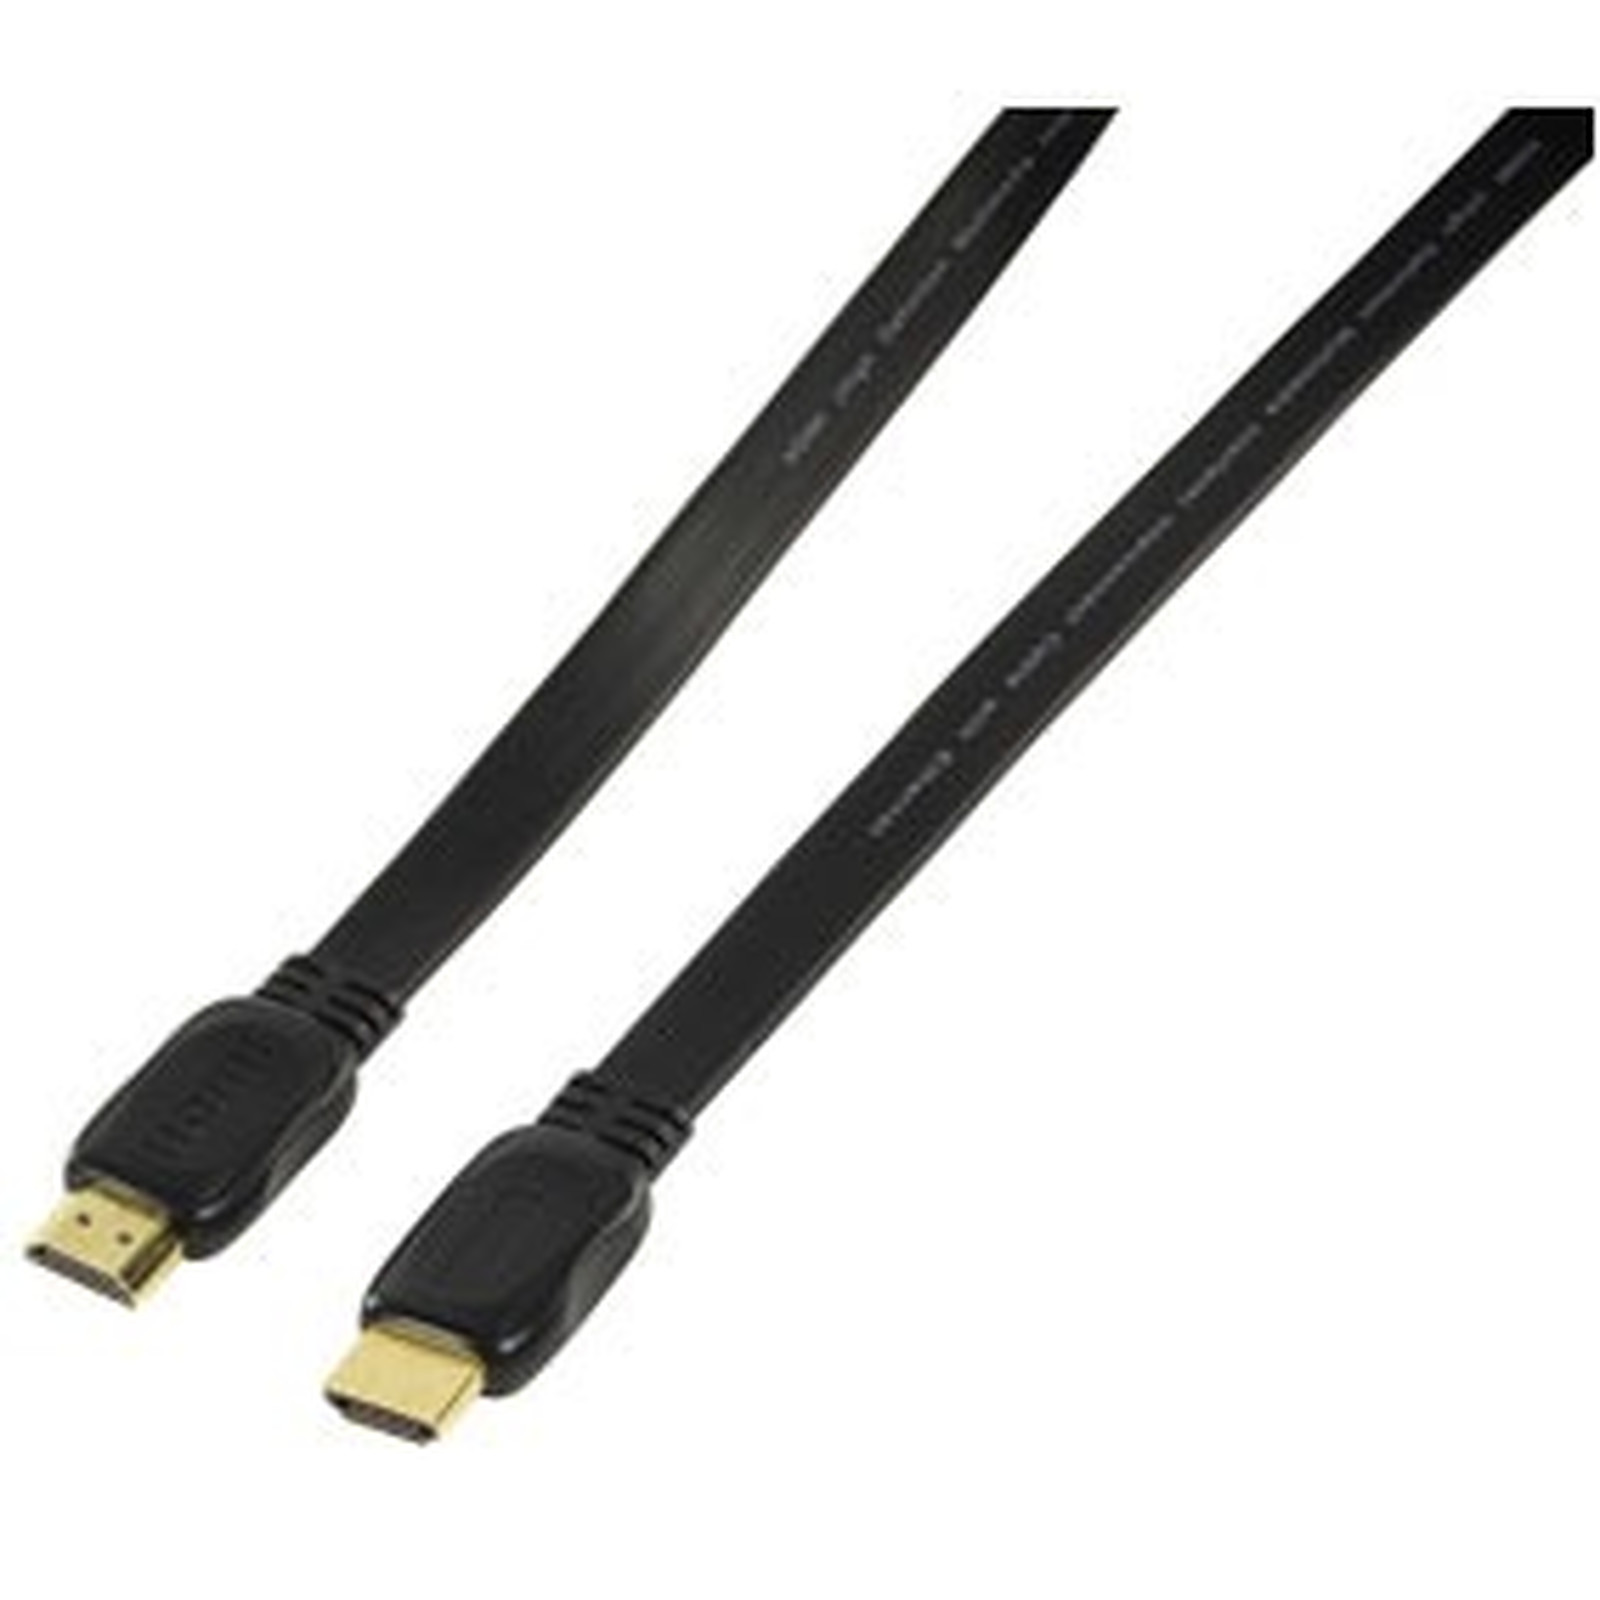 Cable HDMI 1.4 Ethernet Channel male/male (plat, plaque or) - (1.5 mètre) - HDMI Generique